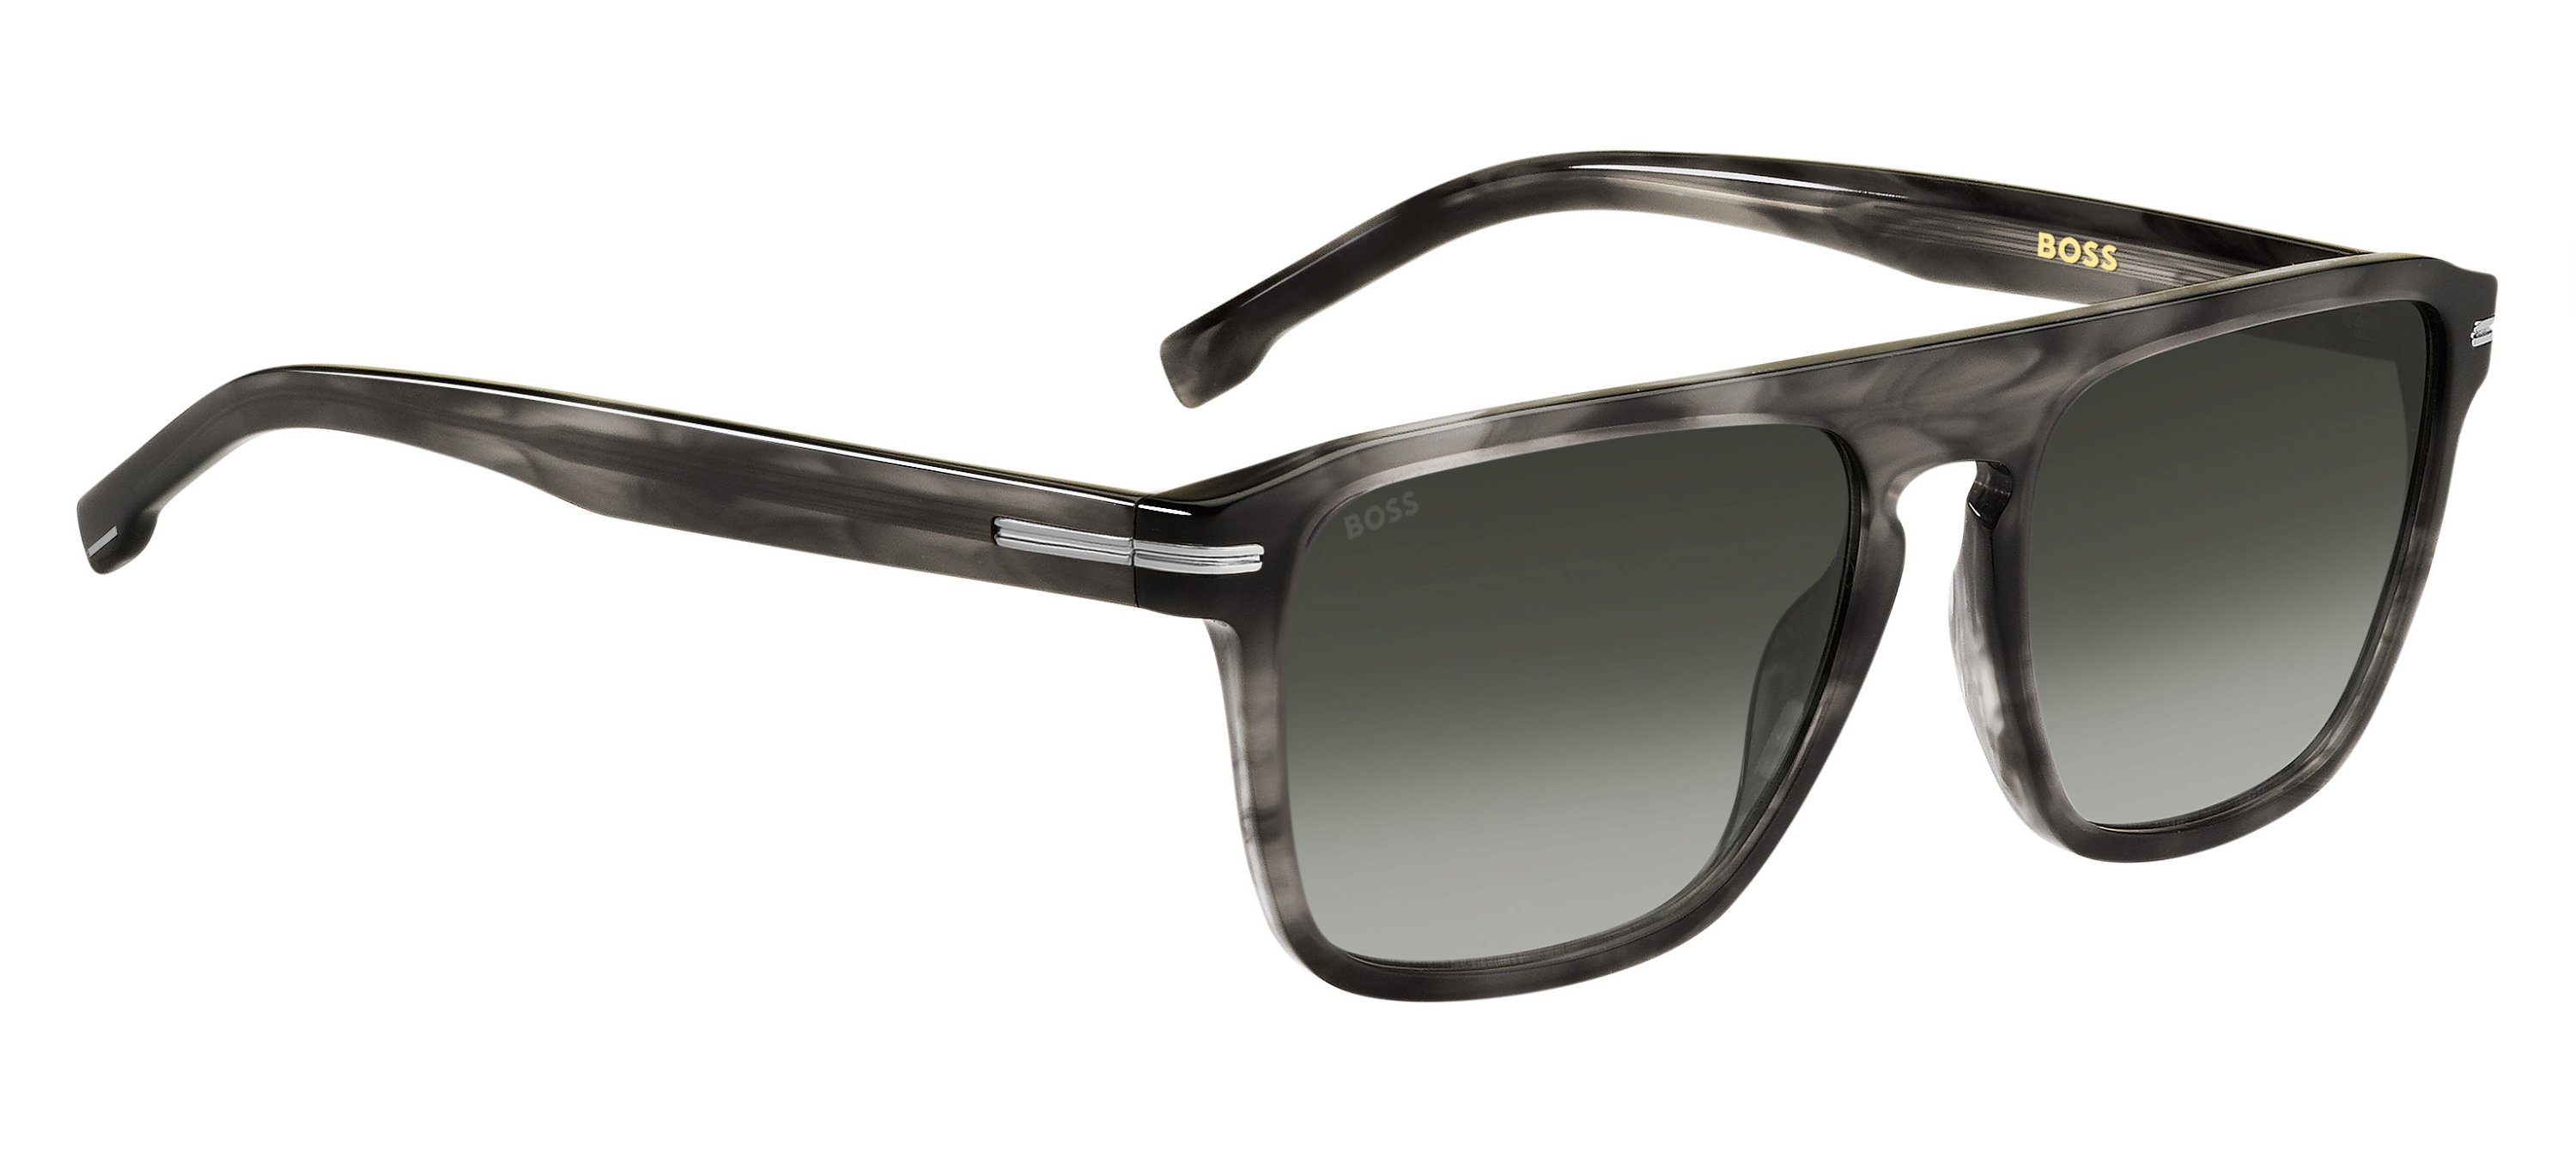 Das Bild zeigt die Sonnenbrille BOSS1599S 2W8 von der Marke BOSS in Grau.